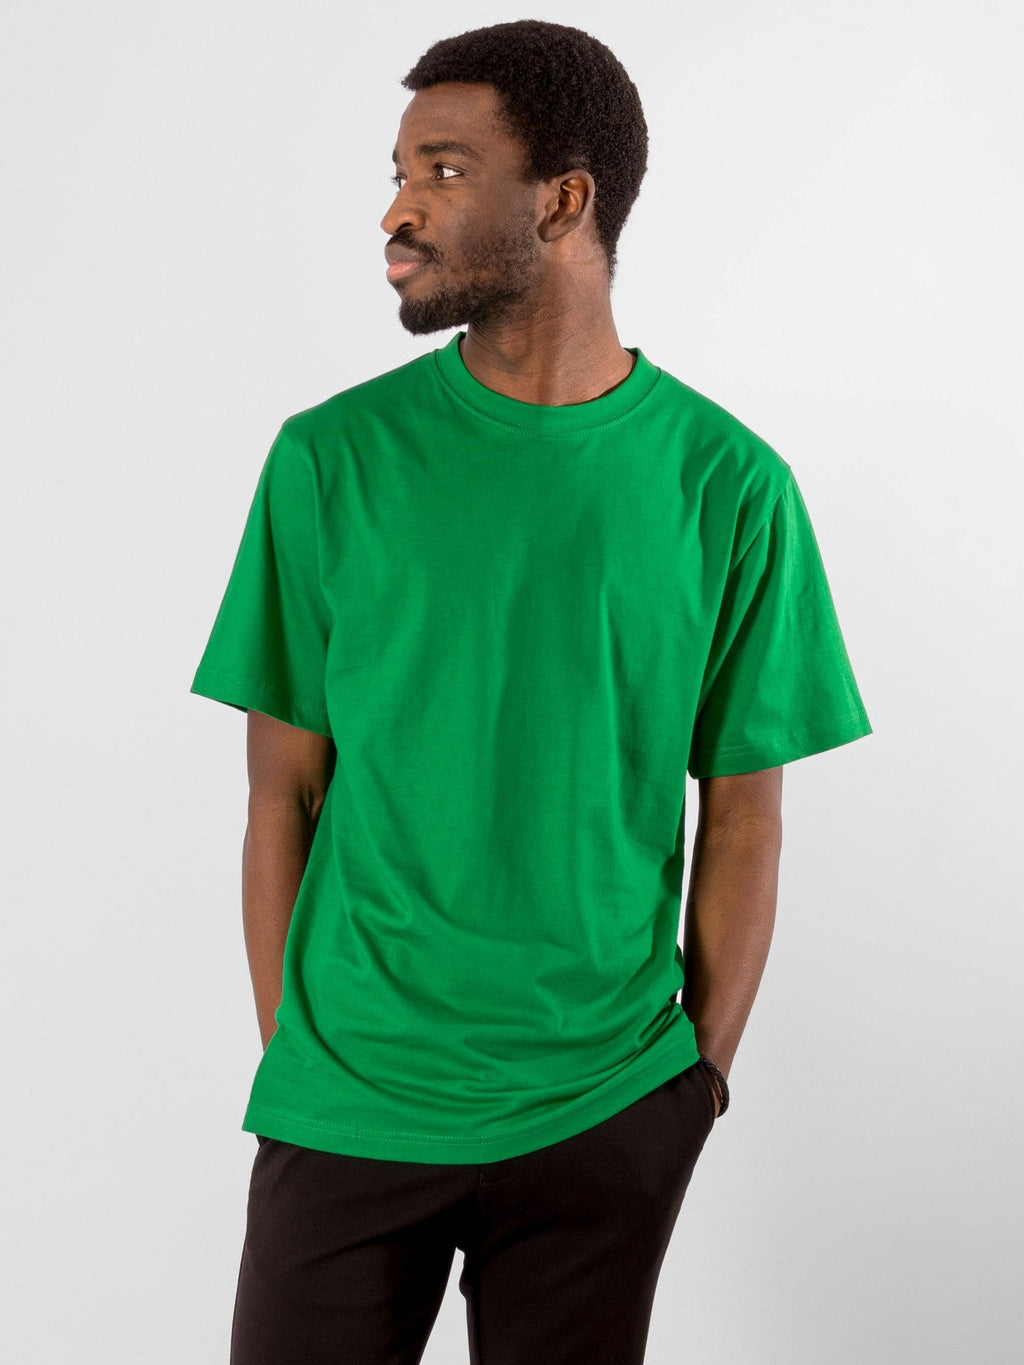 超大T恤 - 春季绿色